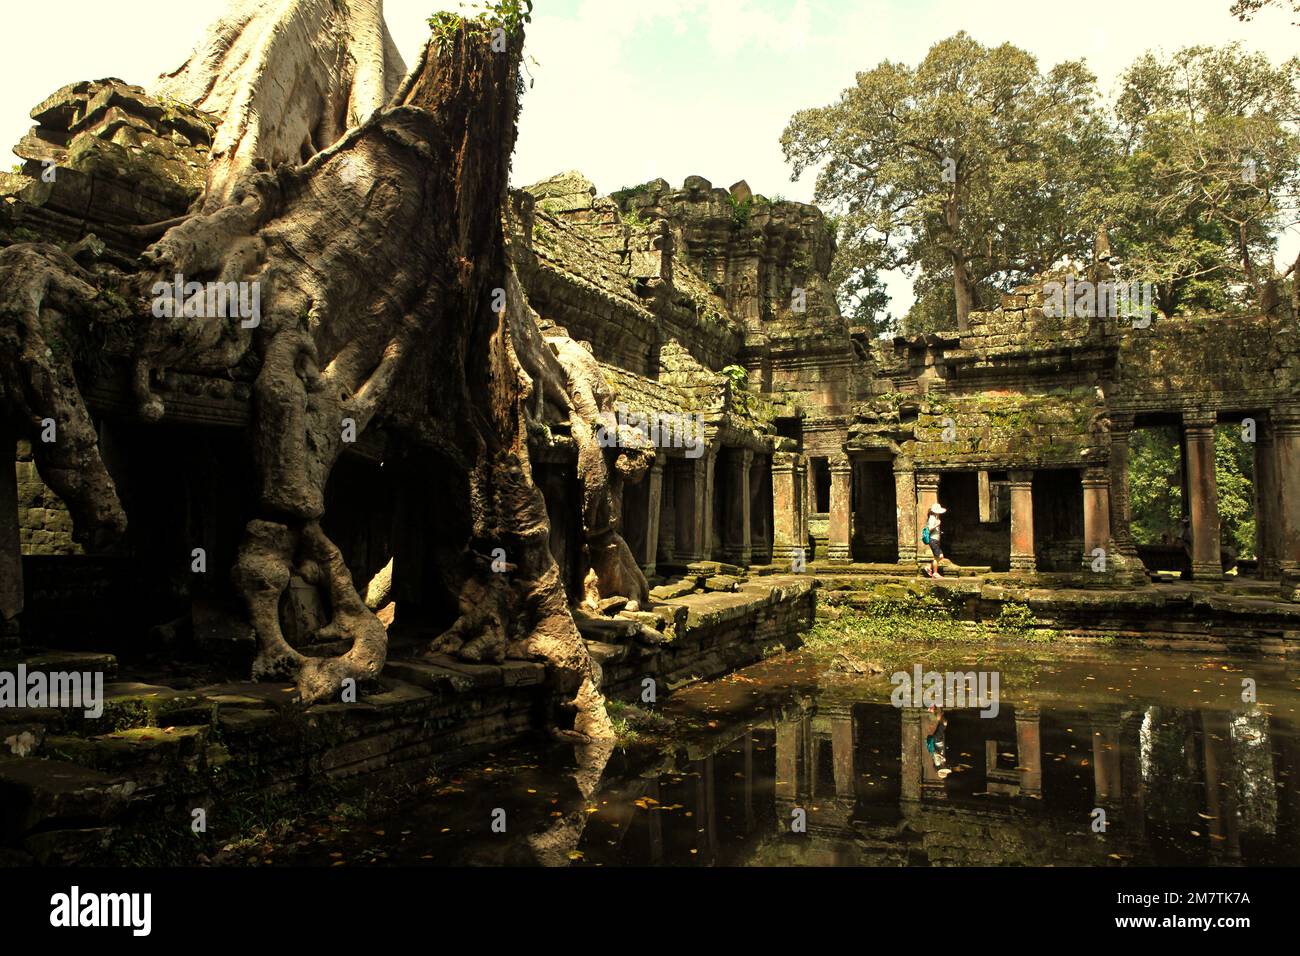 Eine Besucherin auf einem Fußweg zwischen einem alten künstlichen Teich und den Ruinen des Preah Khan Tempels in Siem Reap, Kambodscha, auf diesem Foto aus dem Jahr 2013. Im vergangenen Jahr (2022) begrüßte Angkor 287.454 internationale Touristen und verdiente 11,5 Millionen US-Dollar aus dem Ticketverkauf, wie das staatseigene Unternehmen Angkor Enterprise in einer von Xinhua am 5. Januar 2023 zitierten Pressemitteilung mitteilte. „Derzeit zieht Angkor zwischen 1.800 und 2.000 ausländische Besucher pro Tag an, ein bedeutender Anstieg von nur 70 pro Tag während der Pandemie in den Jahren 2020 und 2021“, sagte der kambodschanische Staatssekretär des Tourismusministeriums, Top Sopheak. Stockfoto